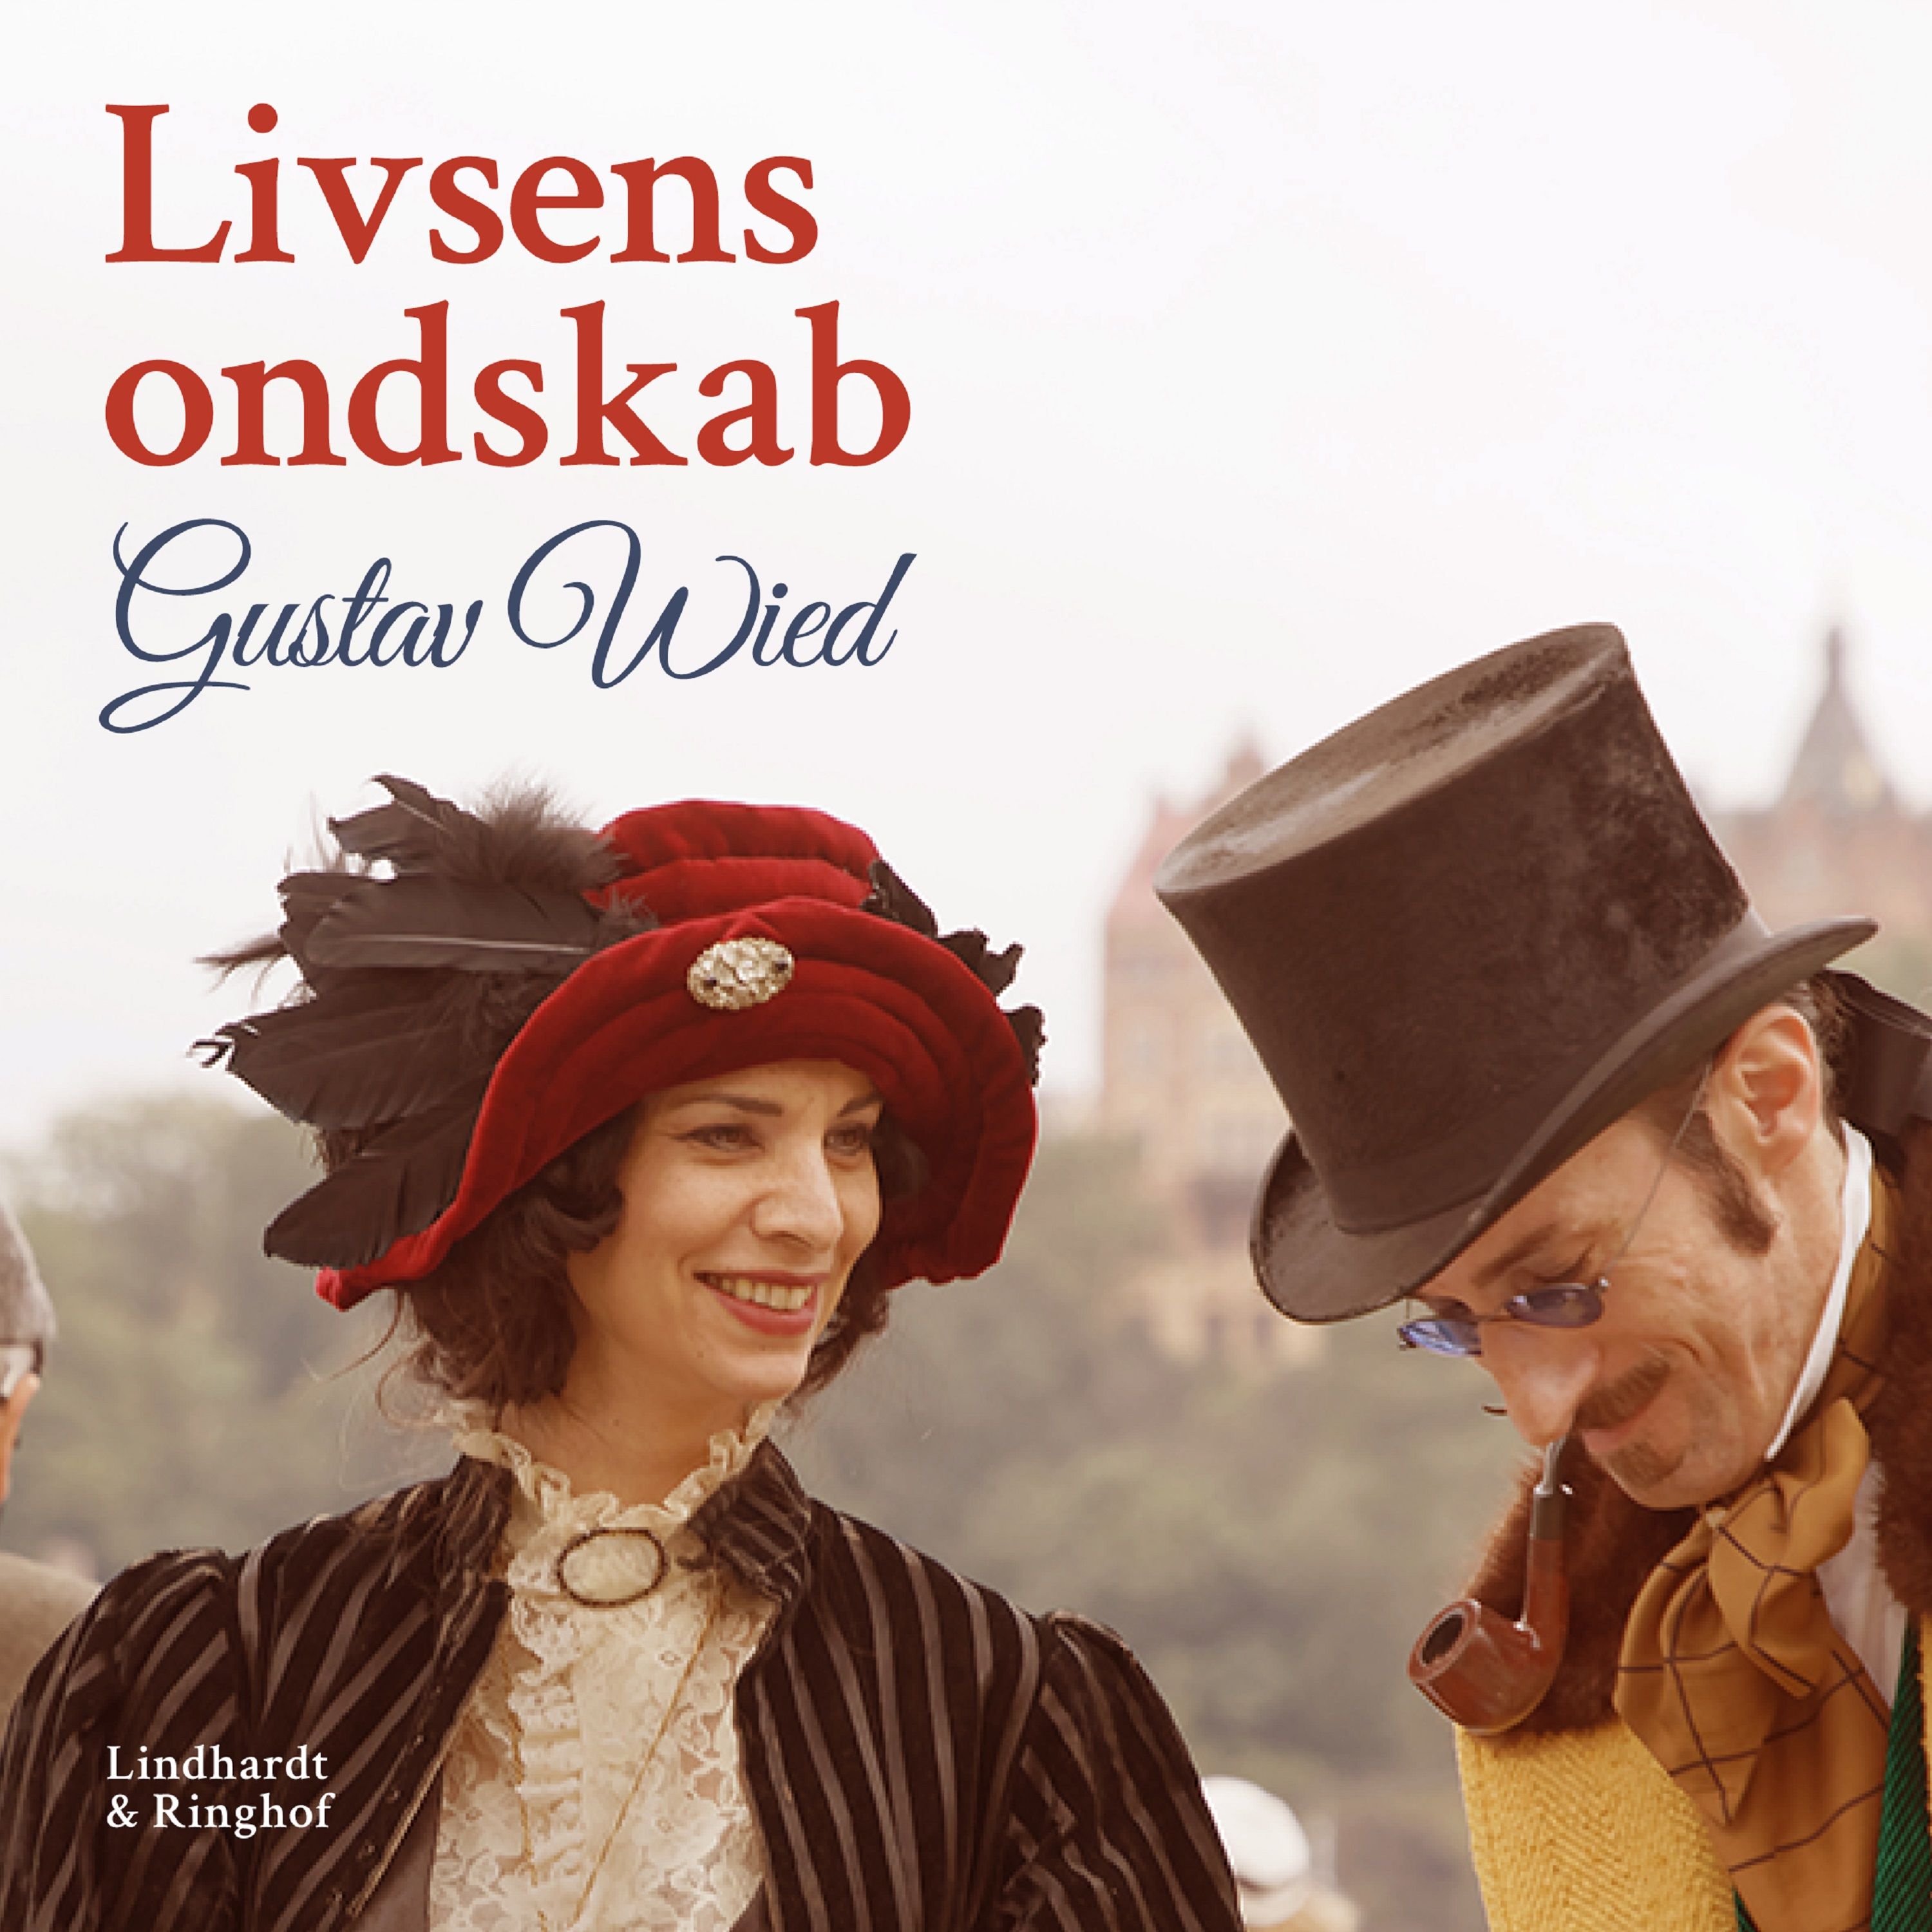 Livsens ondskab, ljudbok av Gustav Wied